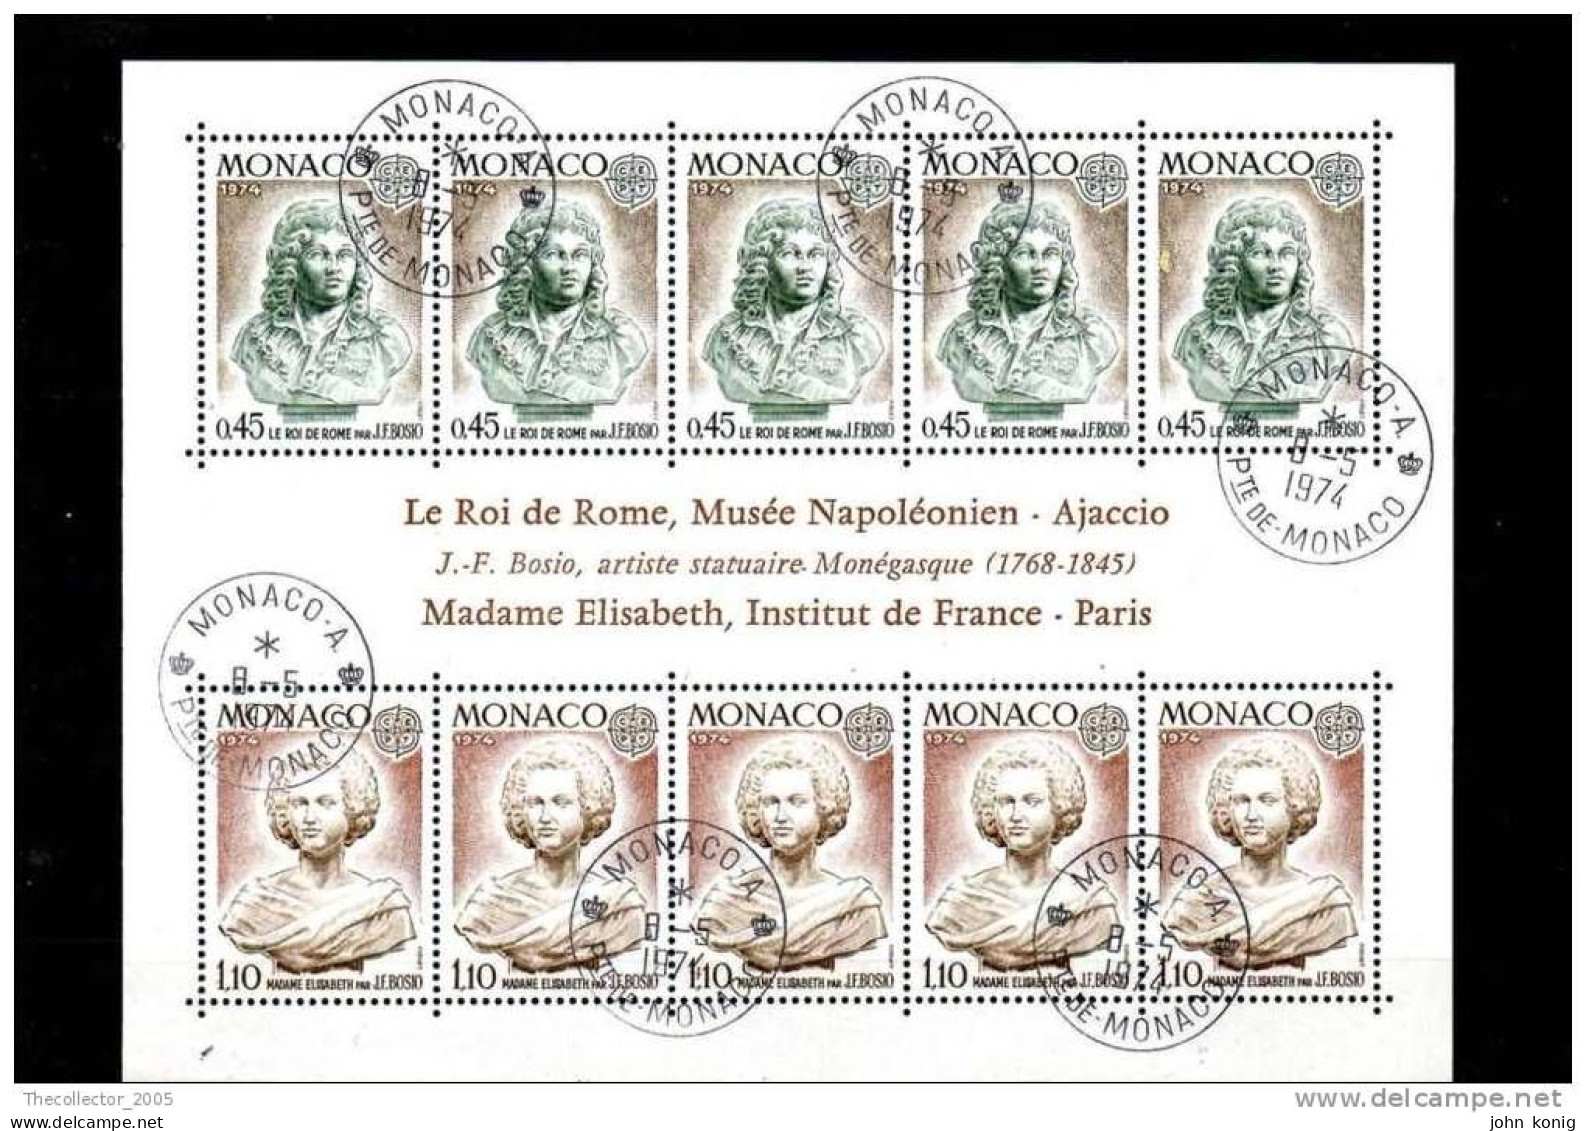 MONACO - FOGLIETTO - STAMPS SHEET - MONACO - MUSEO NAPOLEONICO 1974 (NAPOLEON) - ANNULLO SPECIALE - FIRST DAY CANCELLATI - Used Stamps